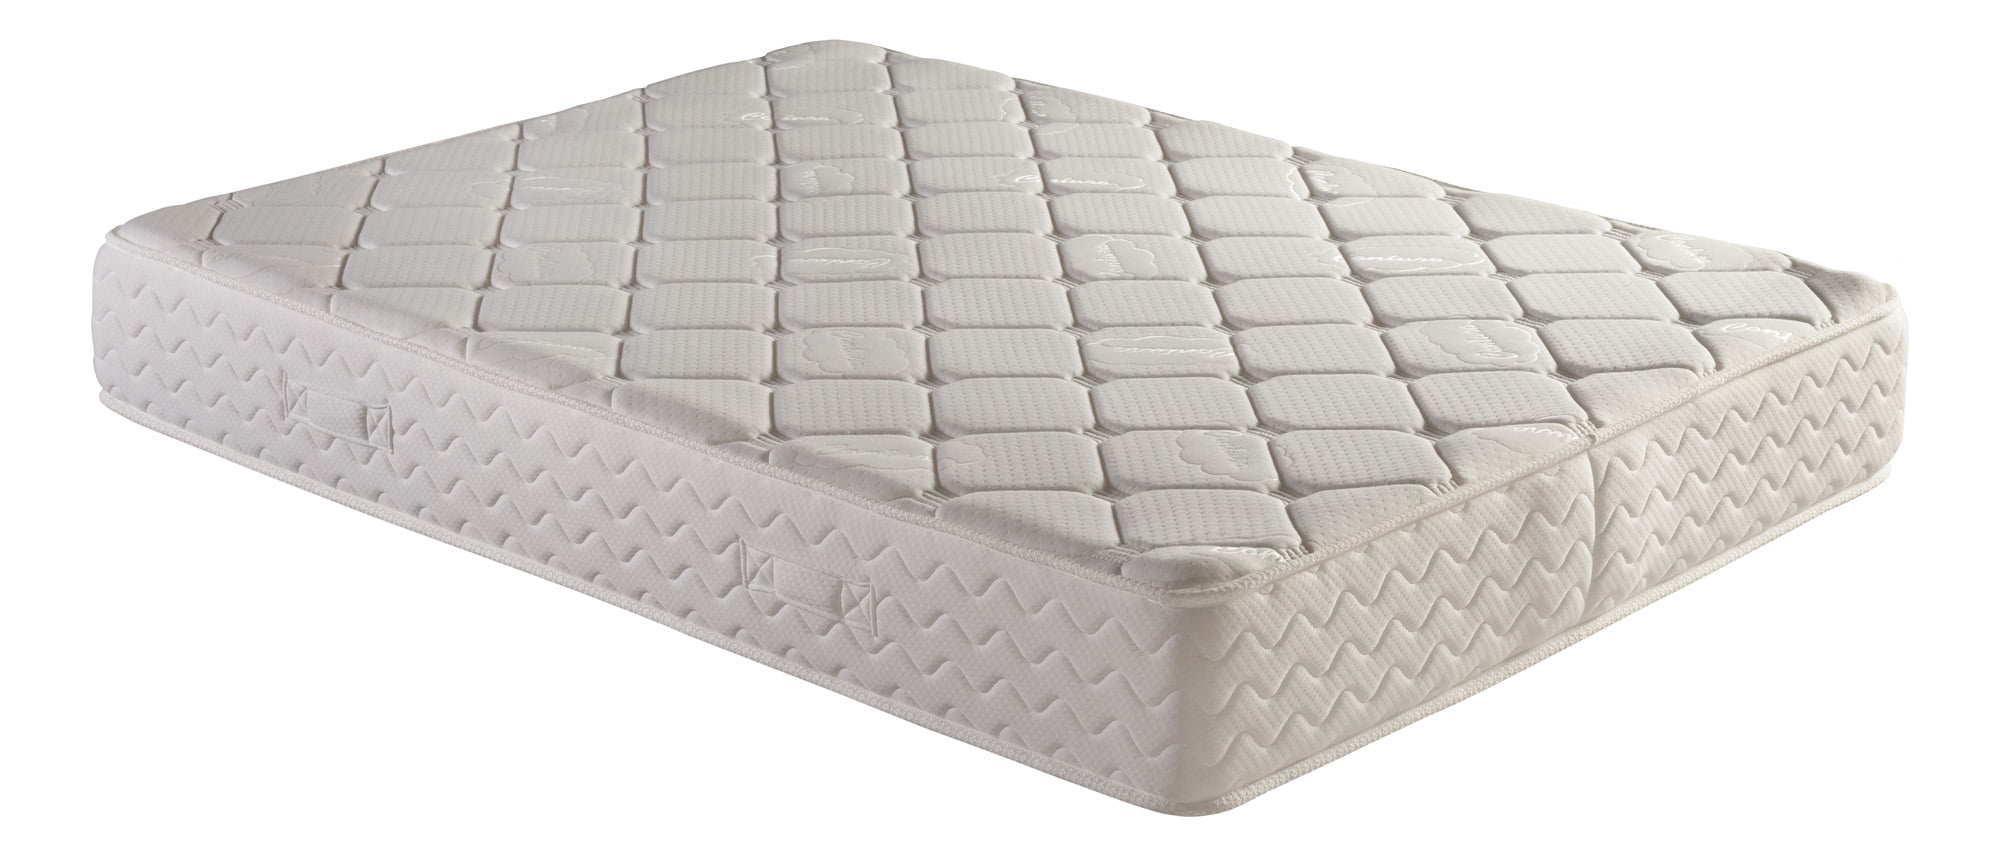 coil sprung cot bed mattress